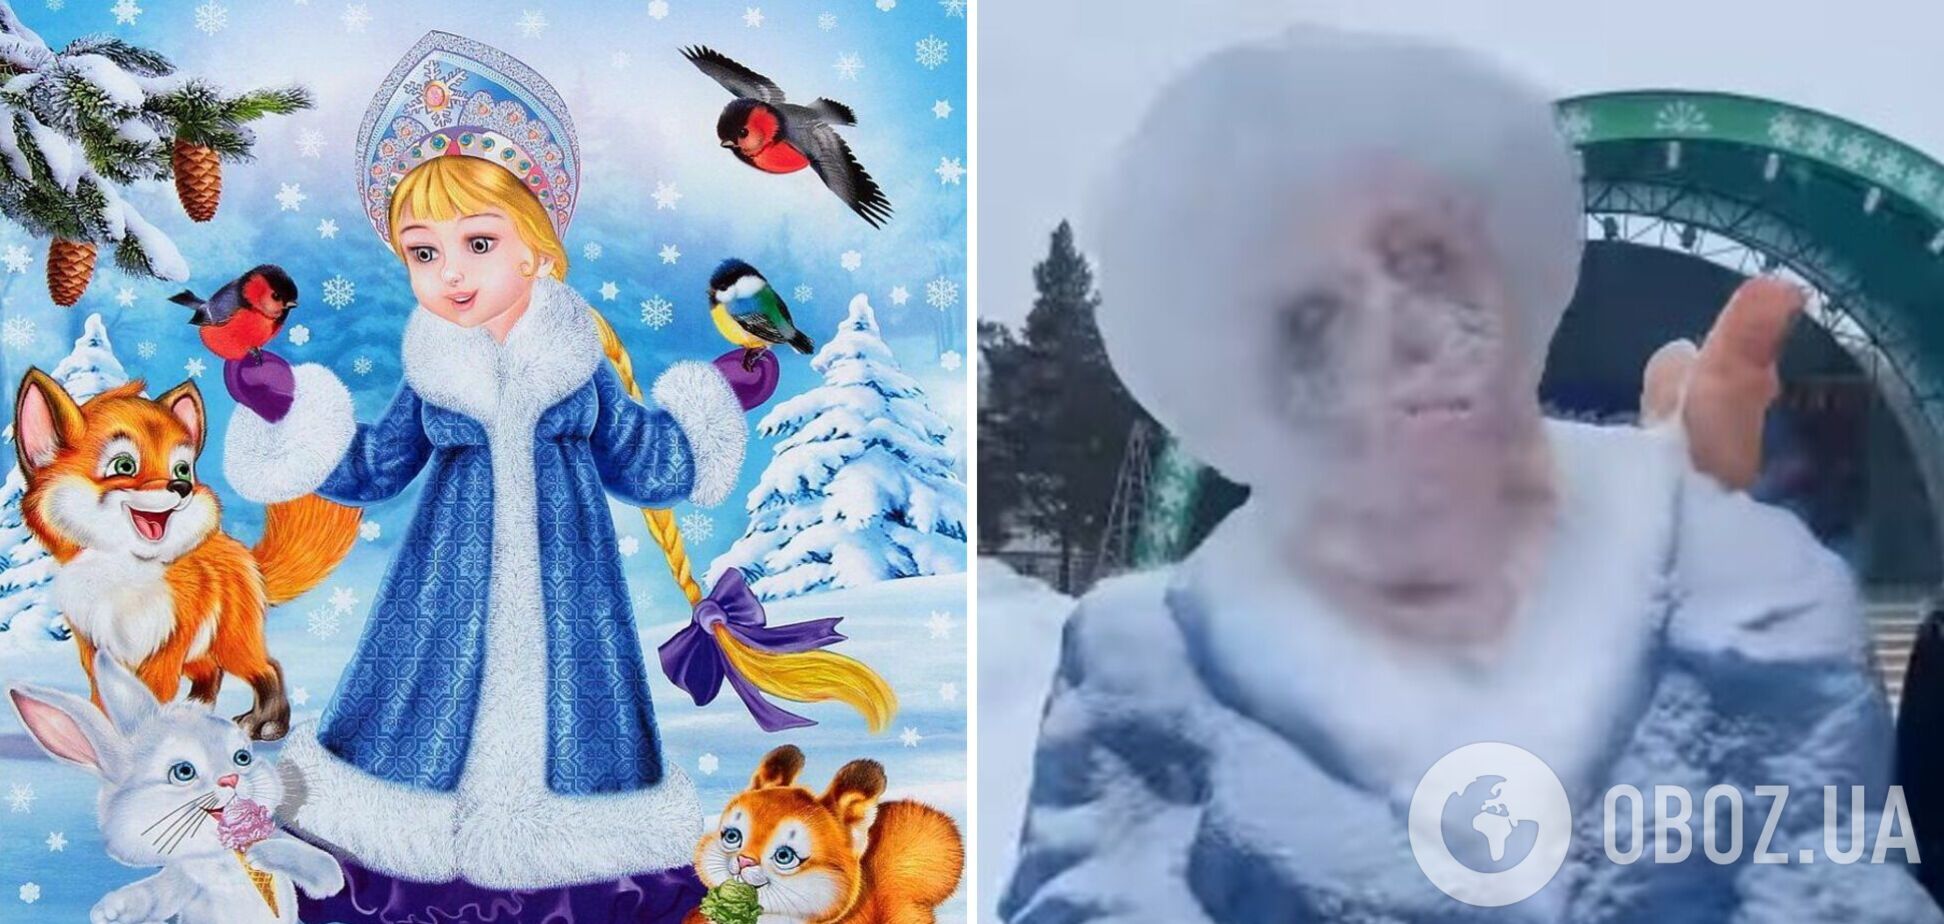 В России из снега слепили 'Снегурочку-зомби'